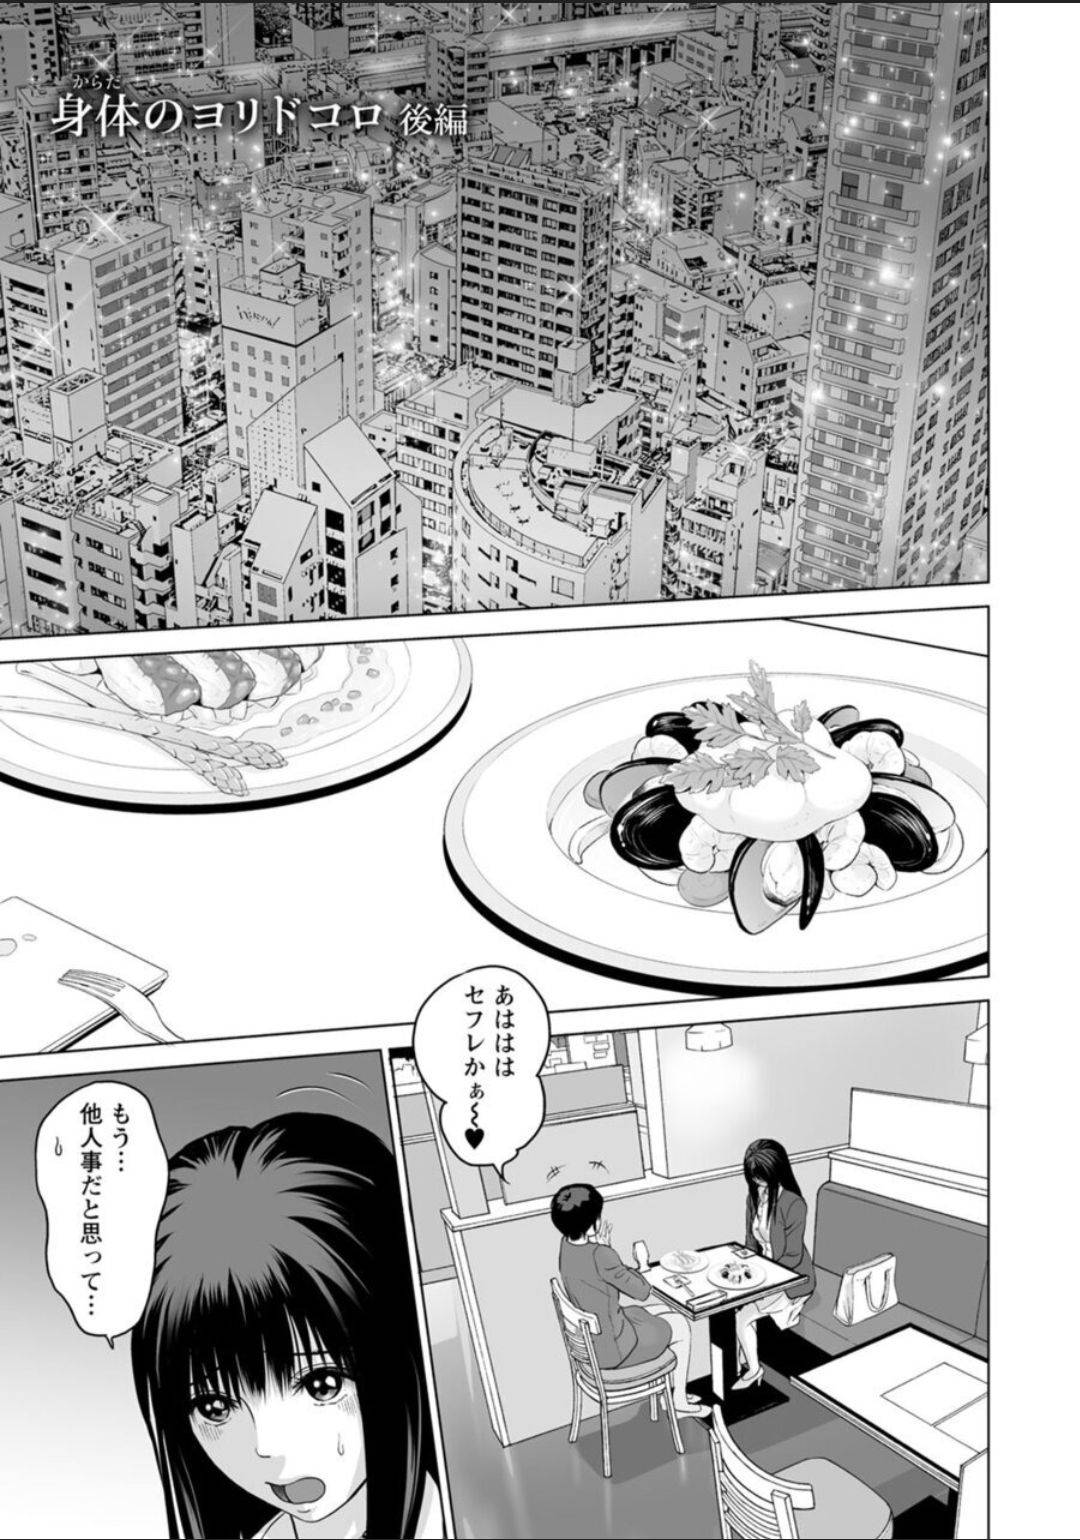 【エロ漫画】元カノは無職彼の家に行くと仕事が決まったと言われ流されるままセックスしてしまう【石紙一】